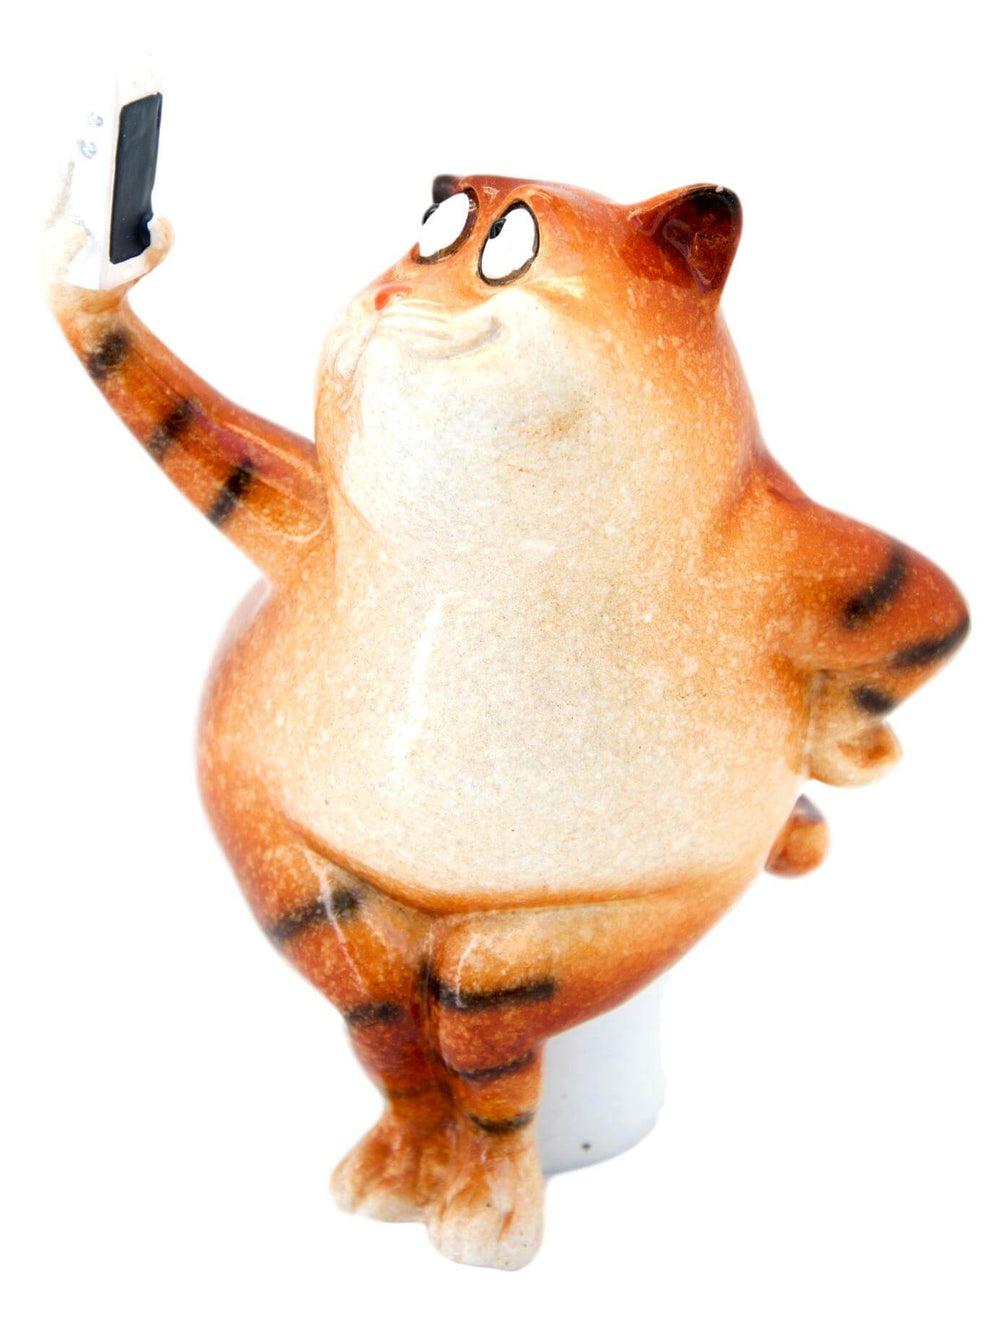 Ginger Fat Cat Taking Selfie on Toilet Ceramic Ornament Pen Holder